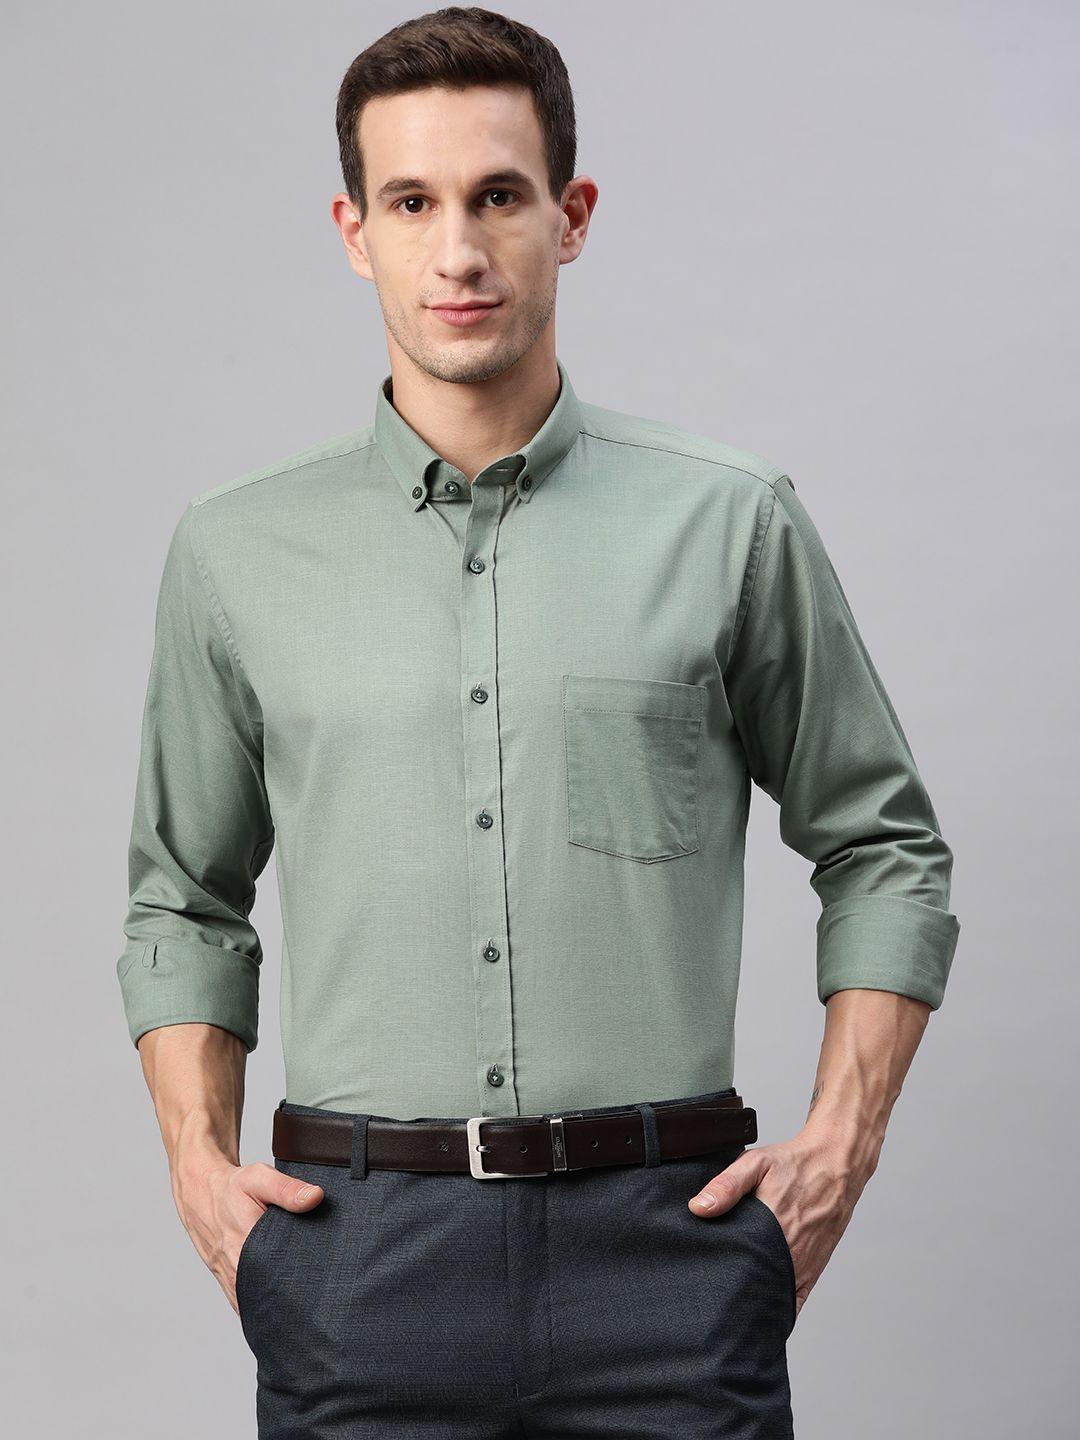 manq men green smart formal shirt